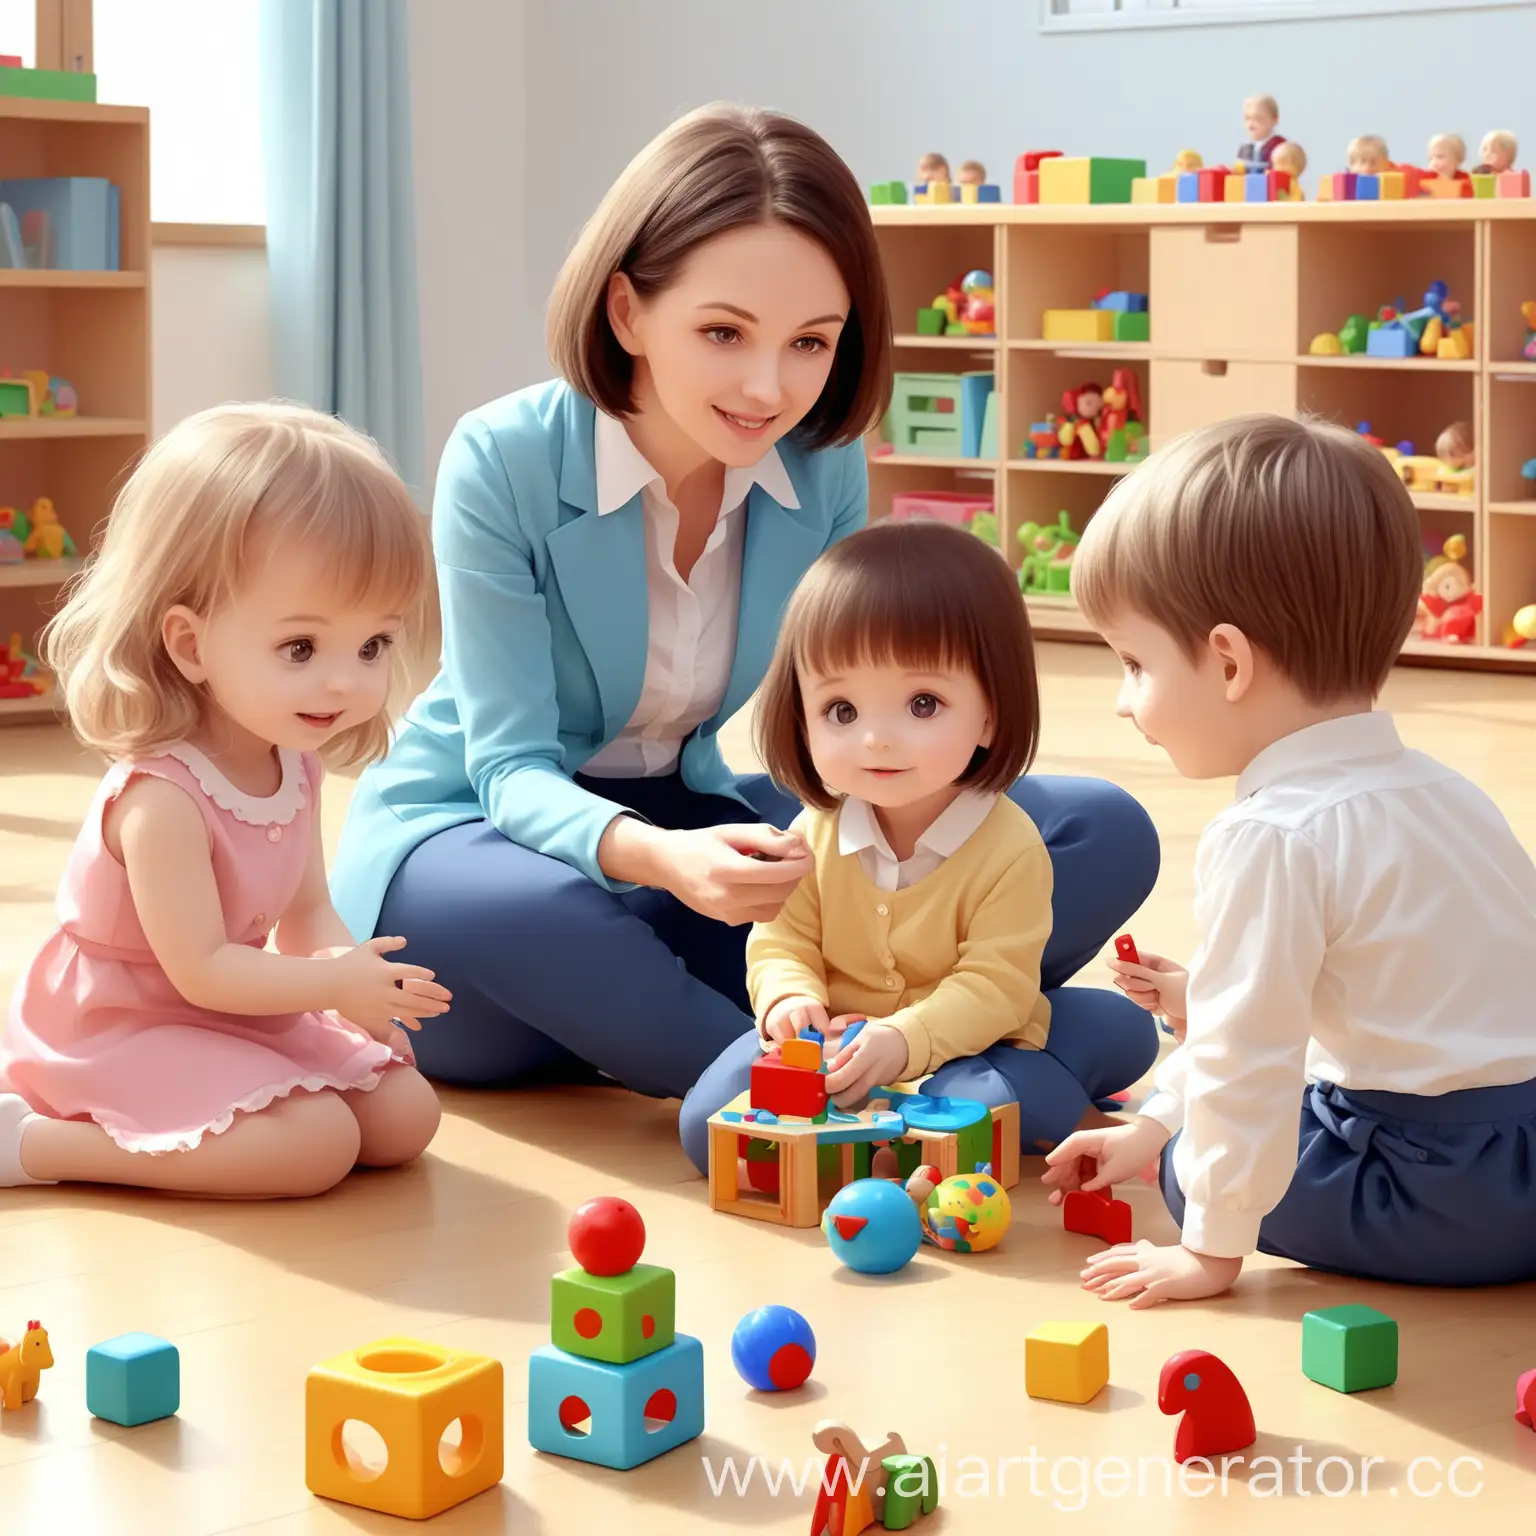 Kindergarten-Fun-Five-Happy-Children-Engage-in-Playful-Activities-with-Teacher